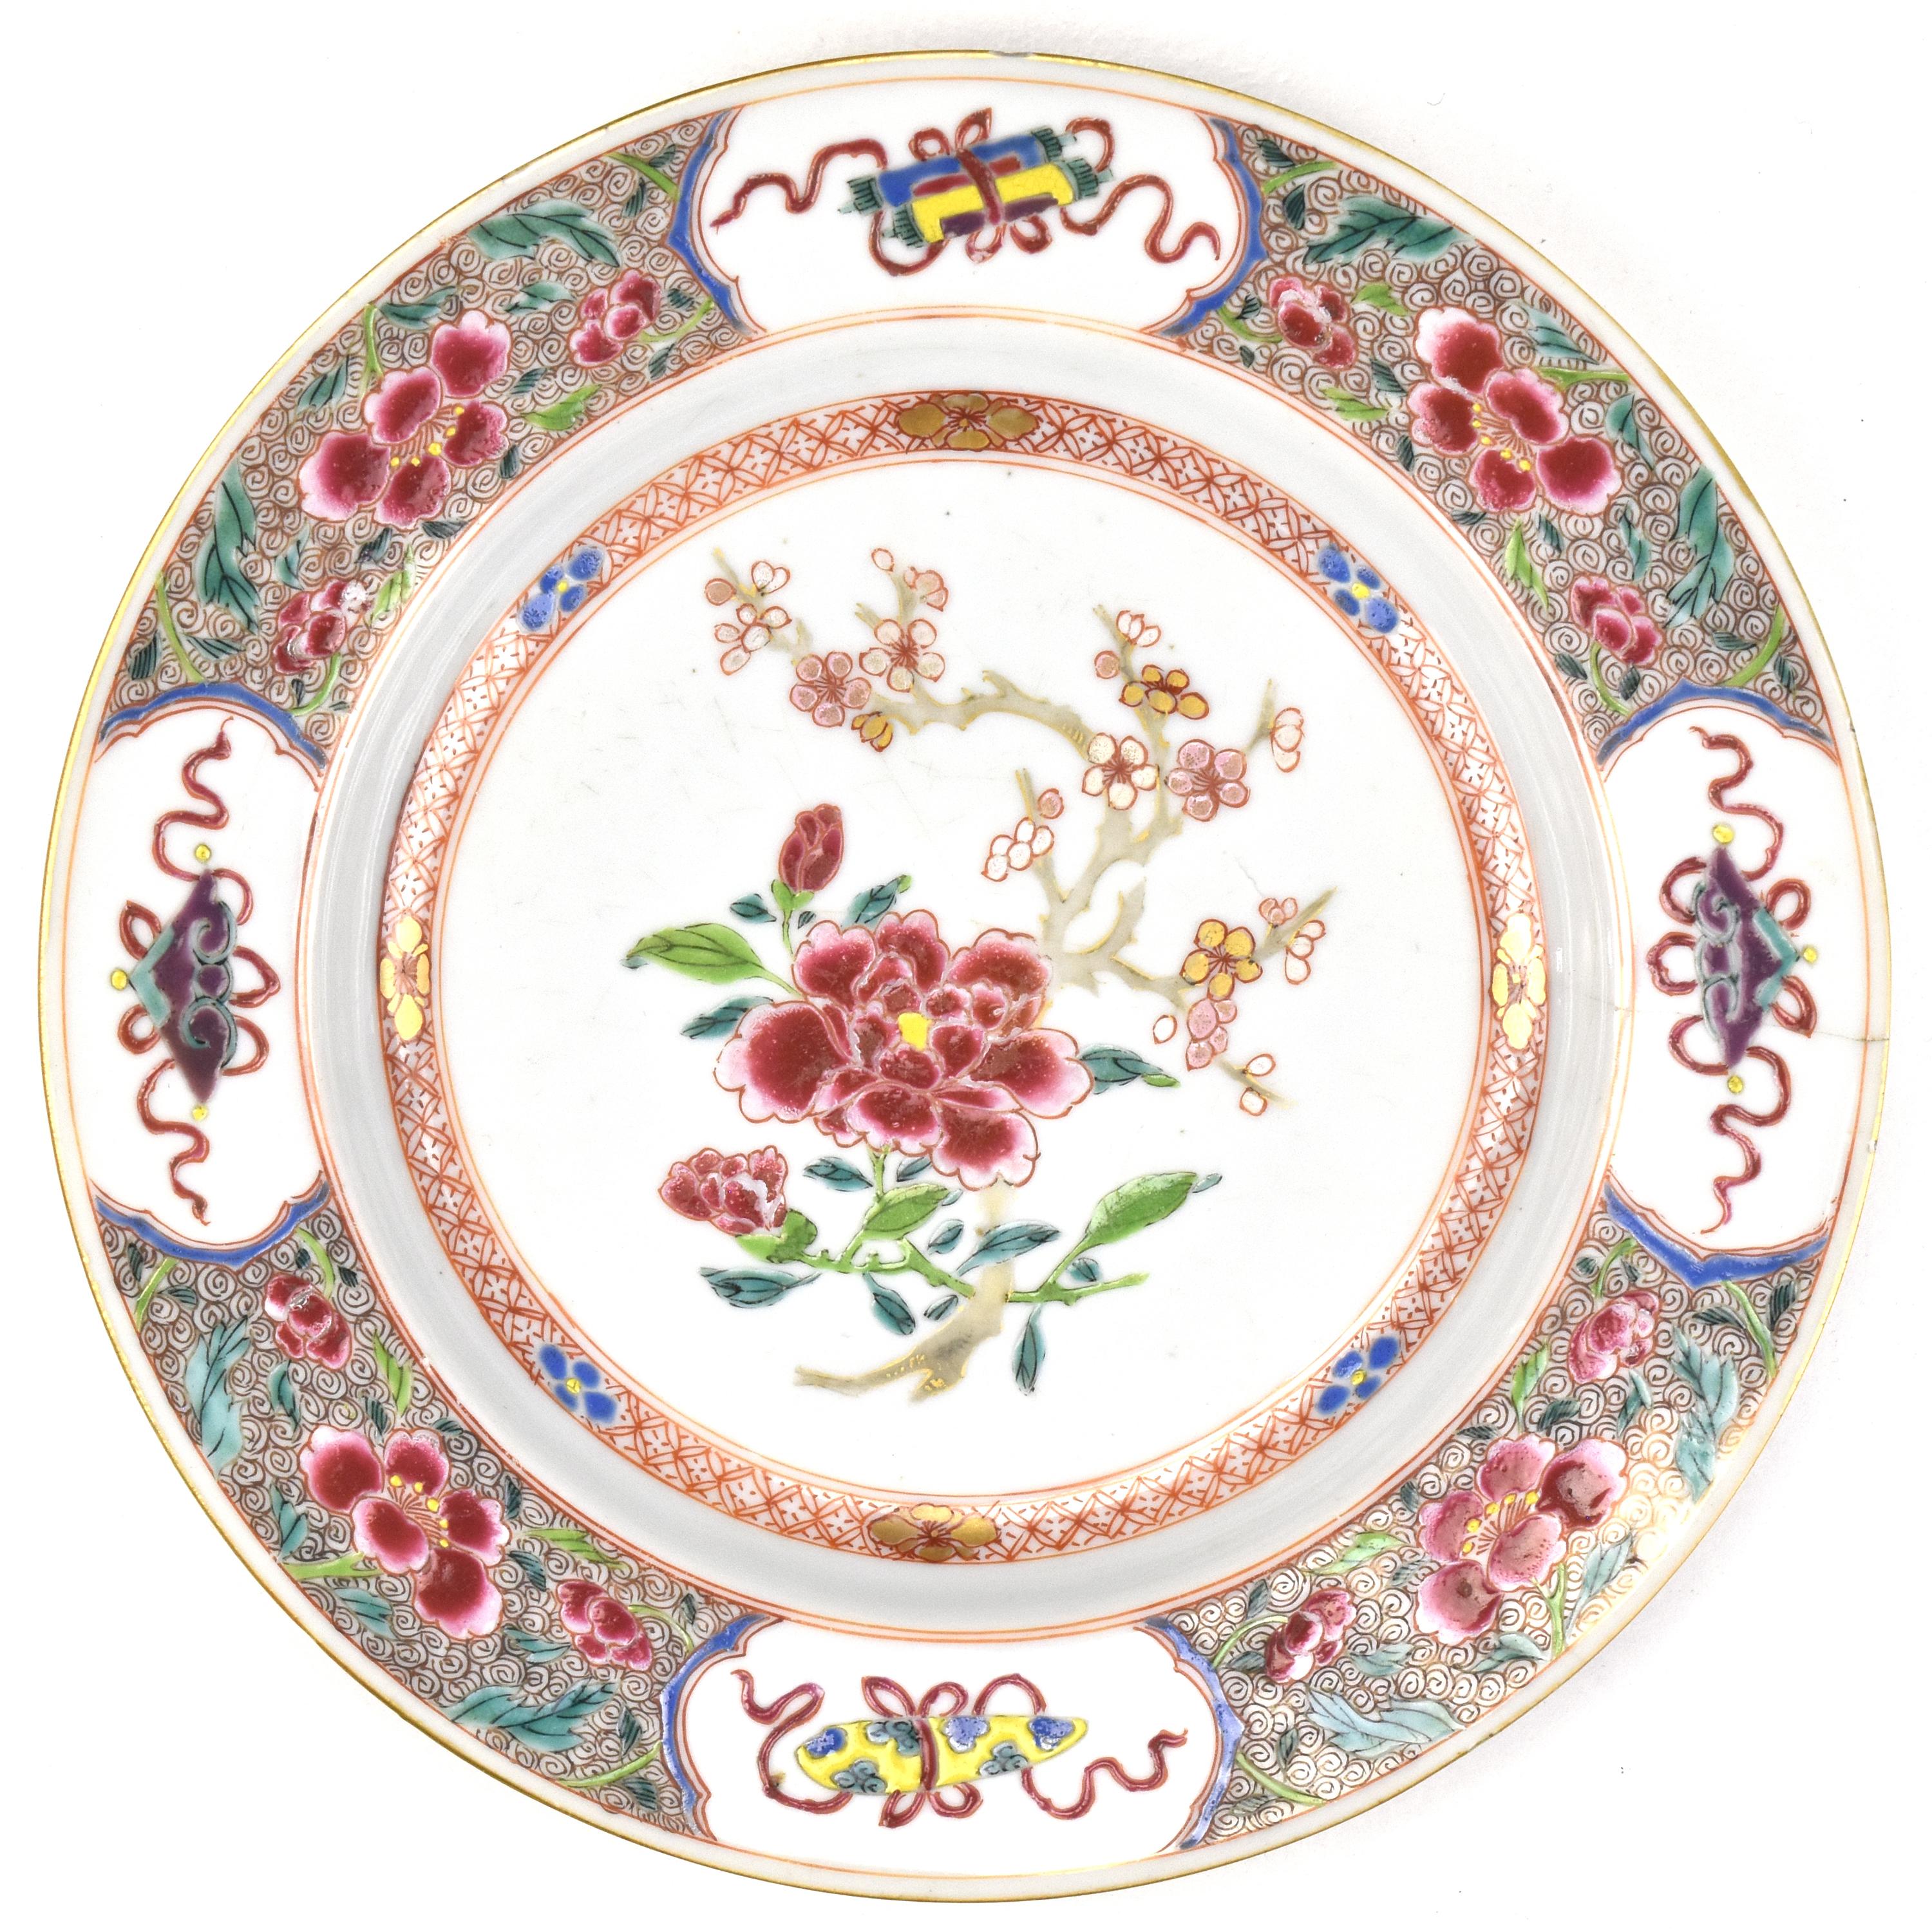 Cette assiette ancienne de Kangxi est une pièce exceptionnelle de l'artisanat de la porcelaine. Il présente un niveau de détail exquis dans son design, avec au centre un délicat motif de chrysanthèmes et de branches de prunus. Ce motif témoigne de